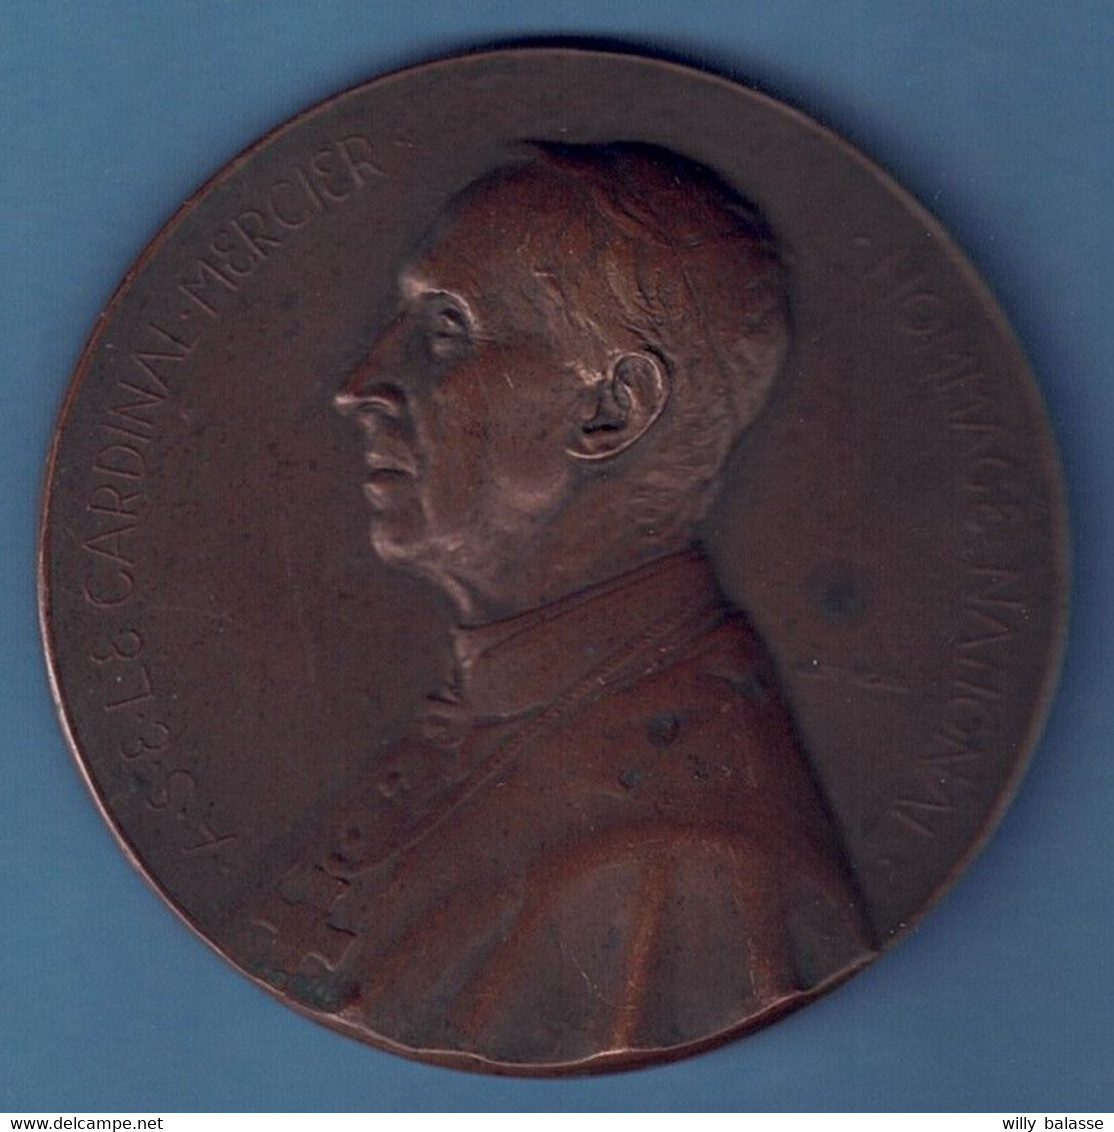 Médaille Cardinal Mercier Hommage National Patriotisme Et Endurance 1914 - Unternehmen